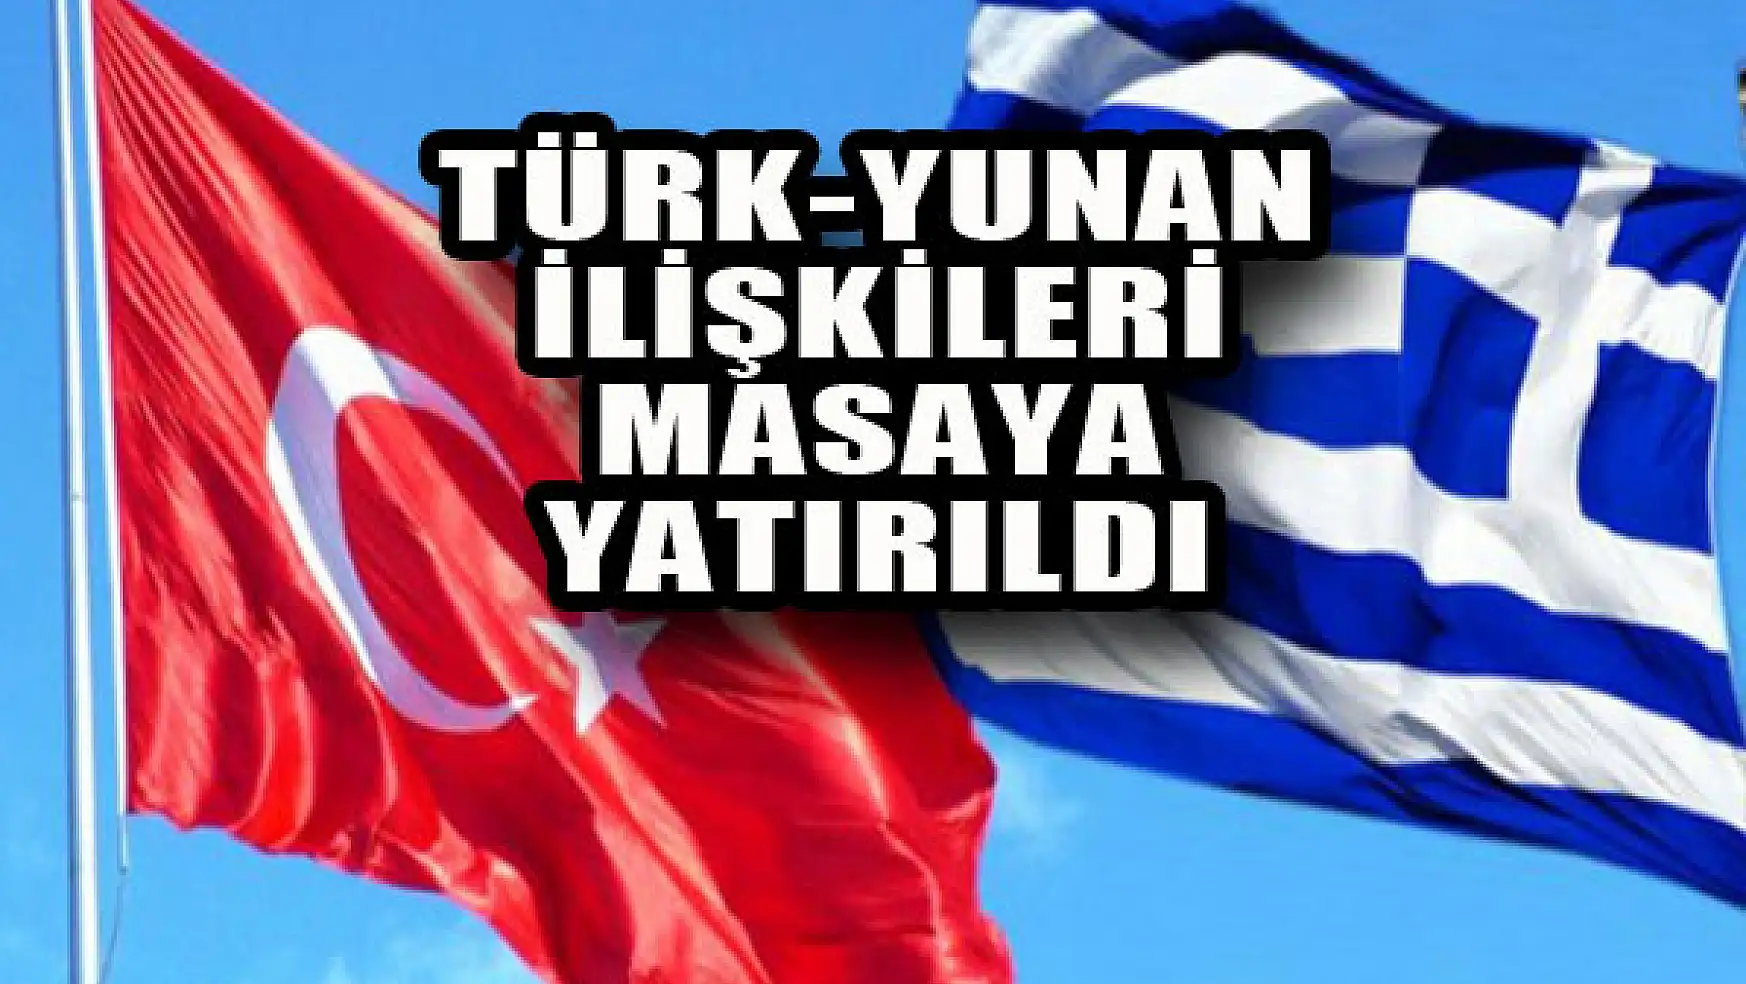 Türk-Yunan ilişkileri masaya yatırıldı...